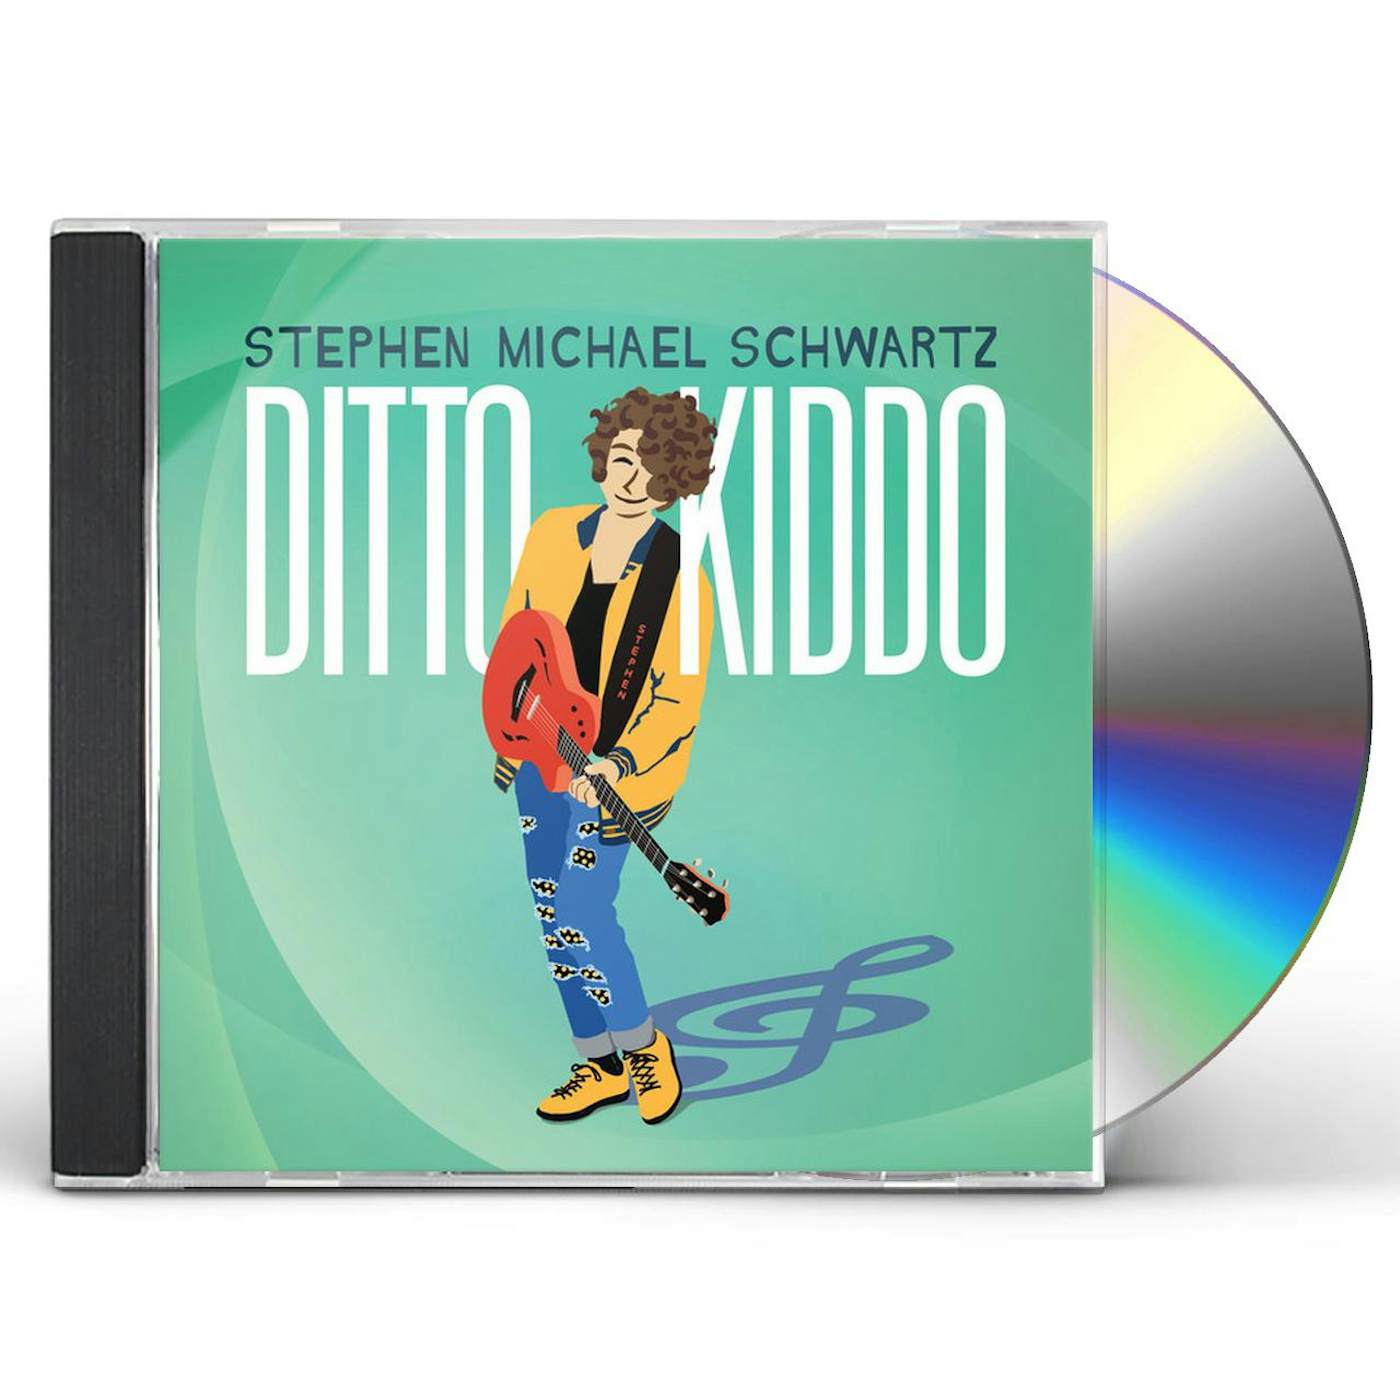 Stephen Michael Schwartz DITTO KIDDO CD